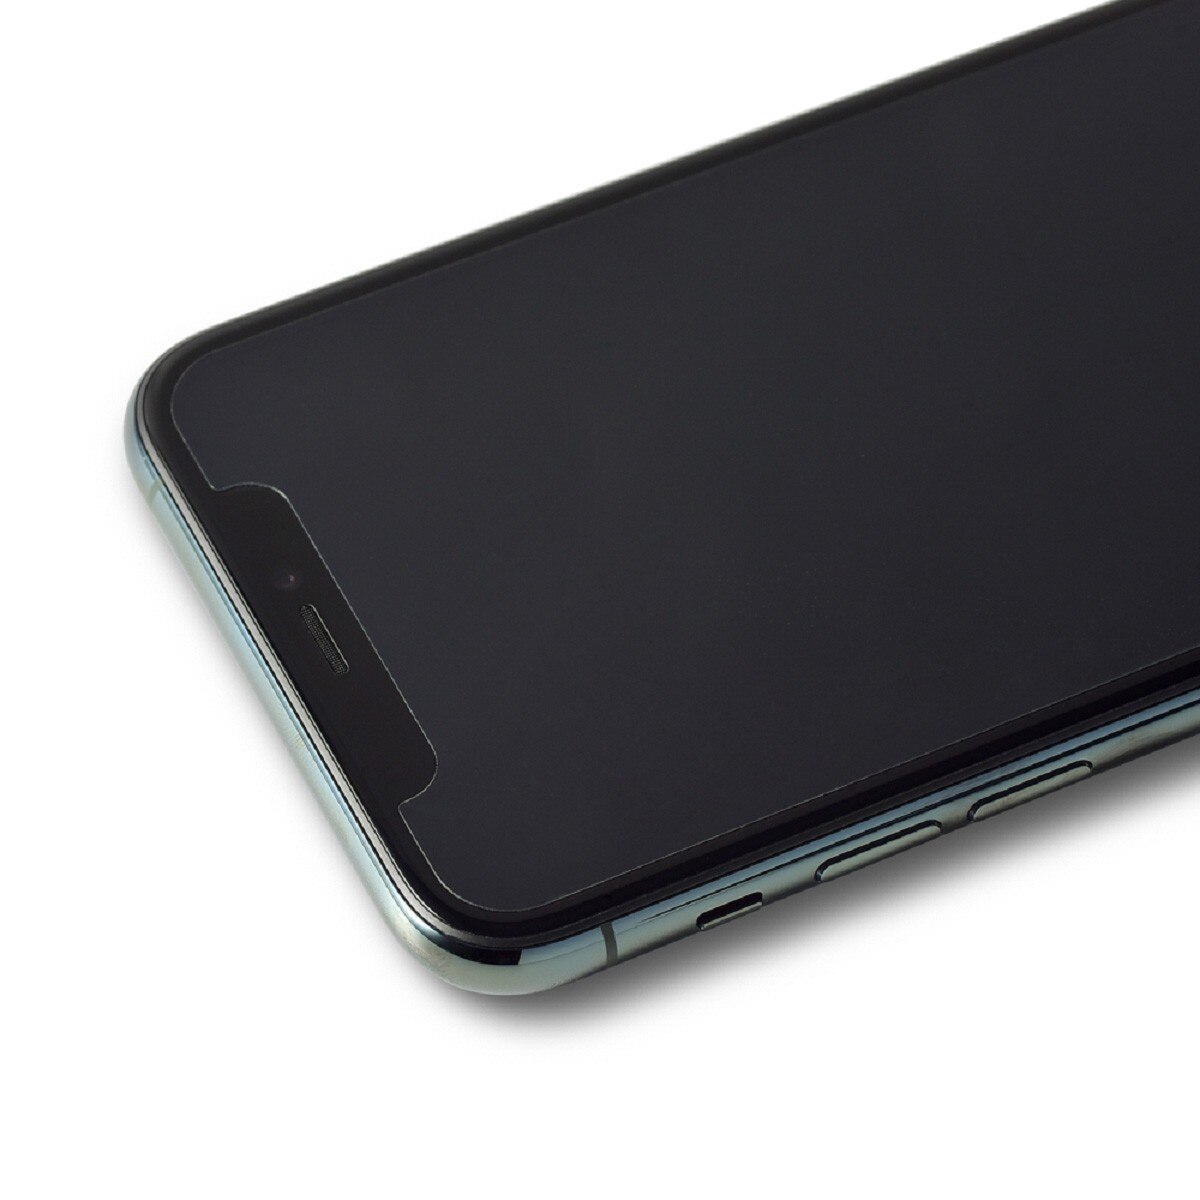 犀牛盾SOLID手機殼,IPHONE 11 PRO經典黑白+耐衝擊正面保護貼.